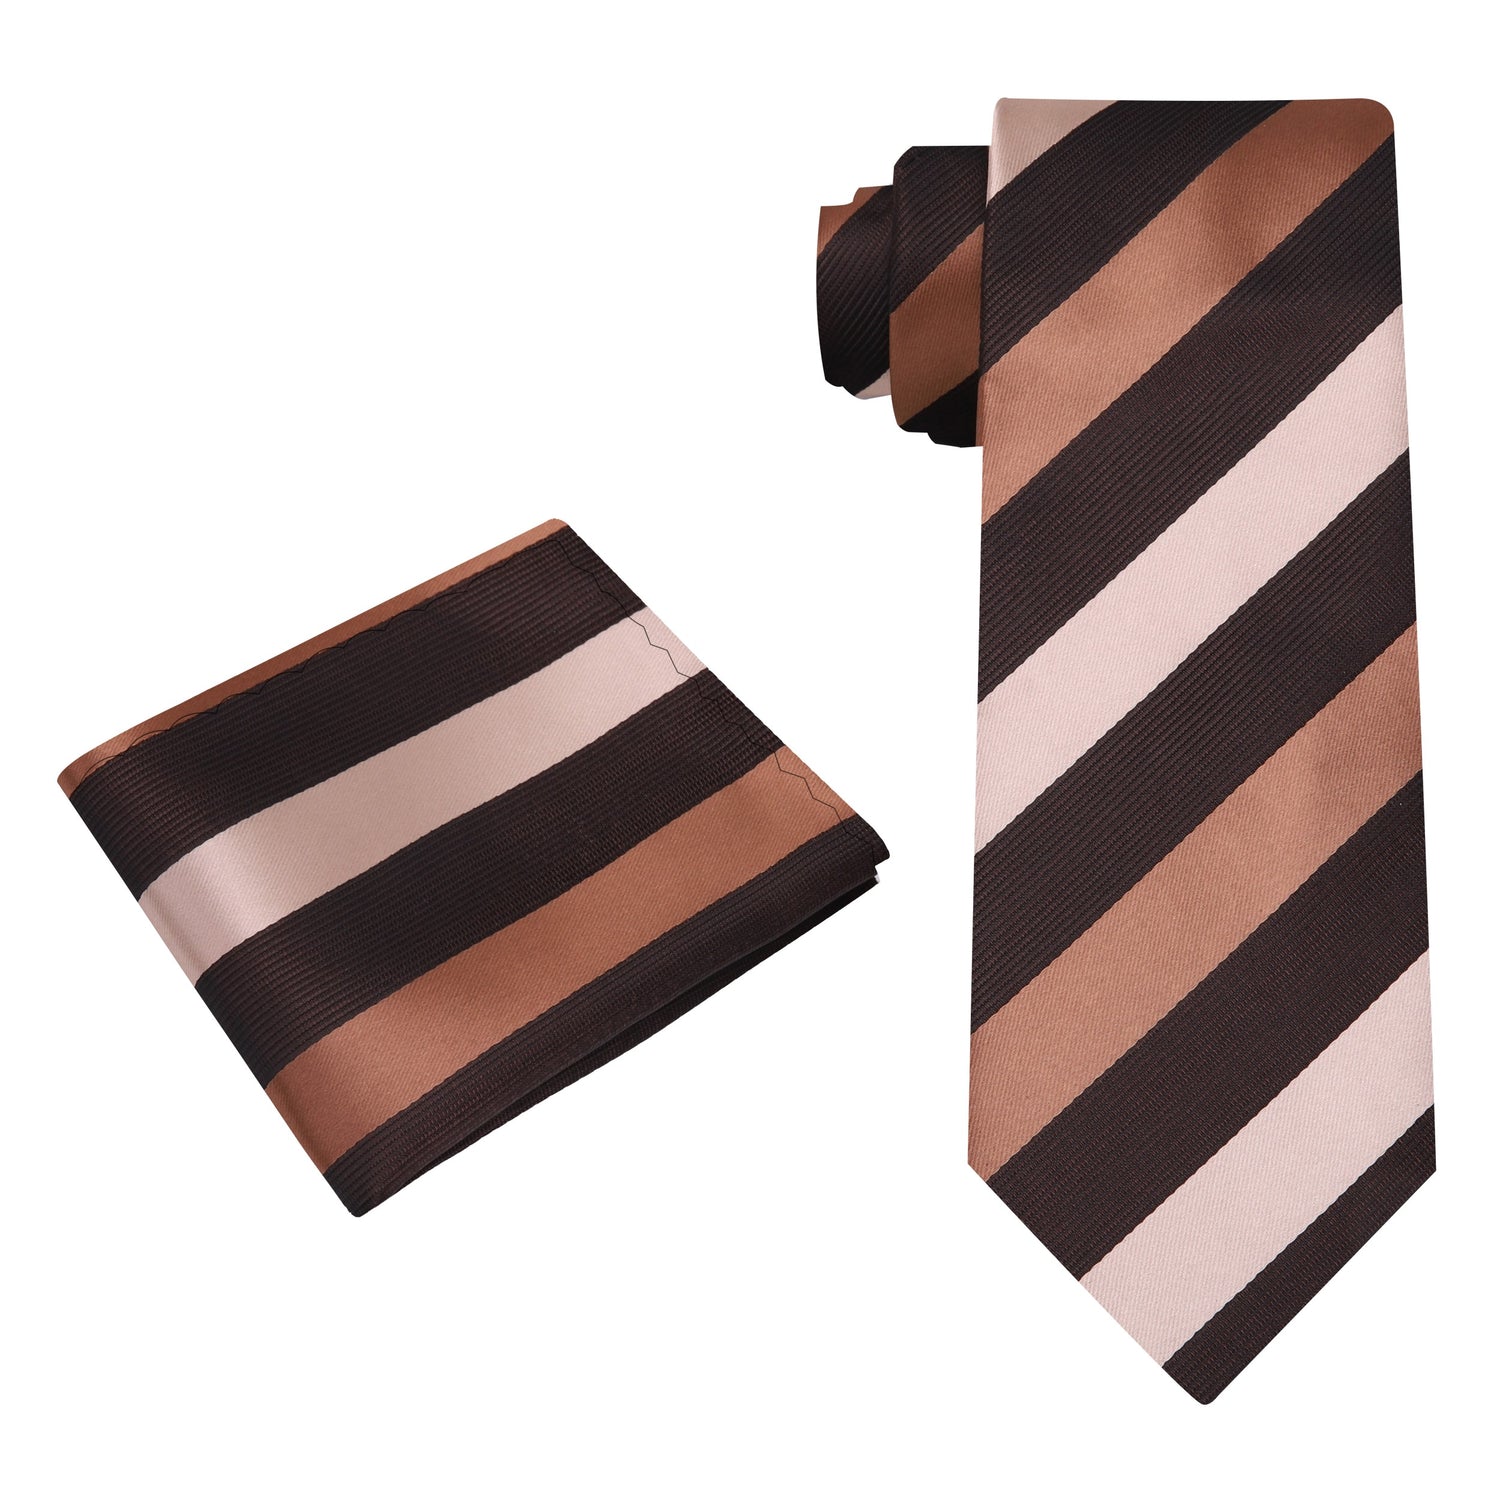 Alt View: A Chocolate, Brown Stripe Pattern Silk Necktie, Pocket Square